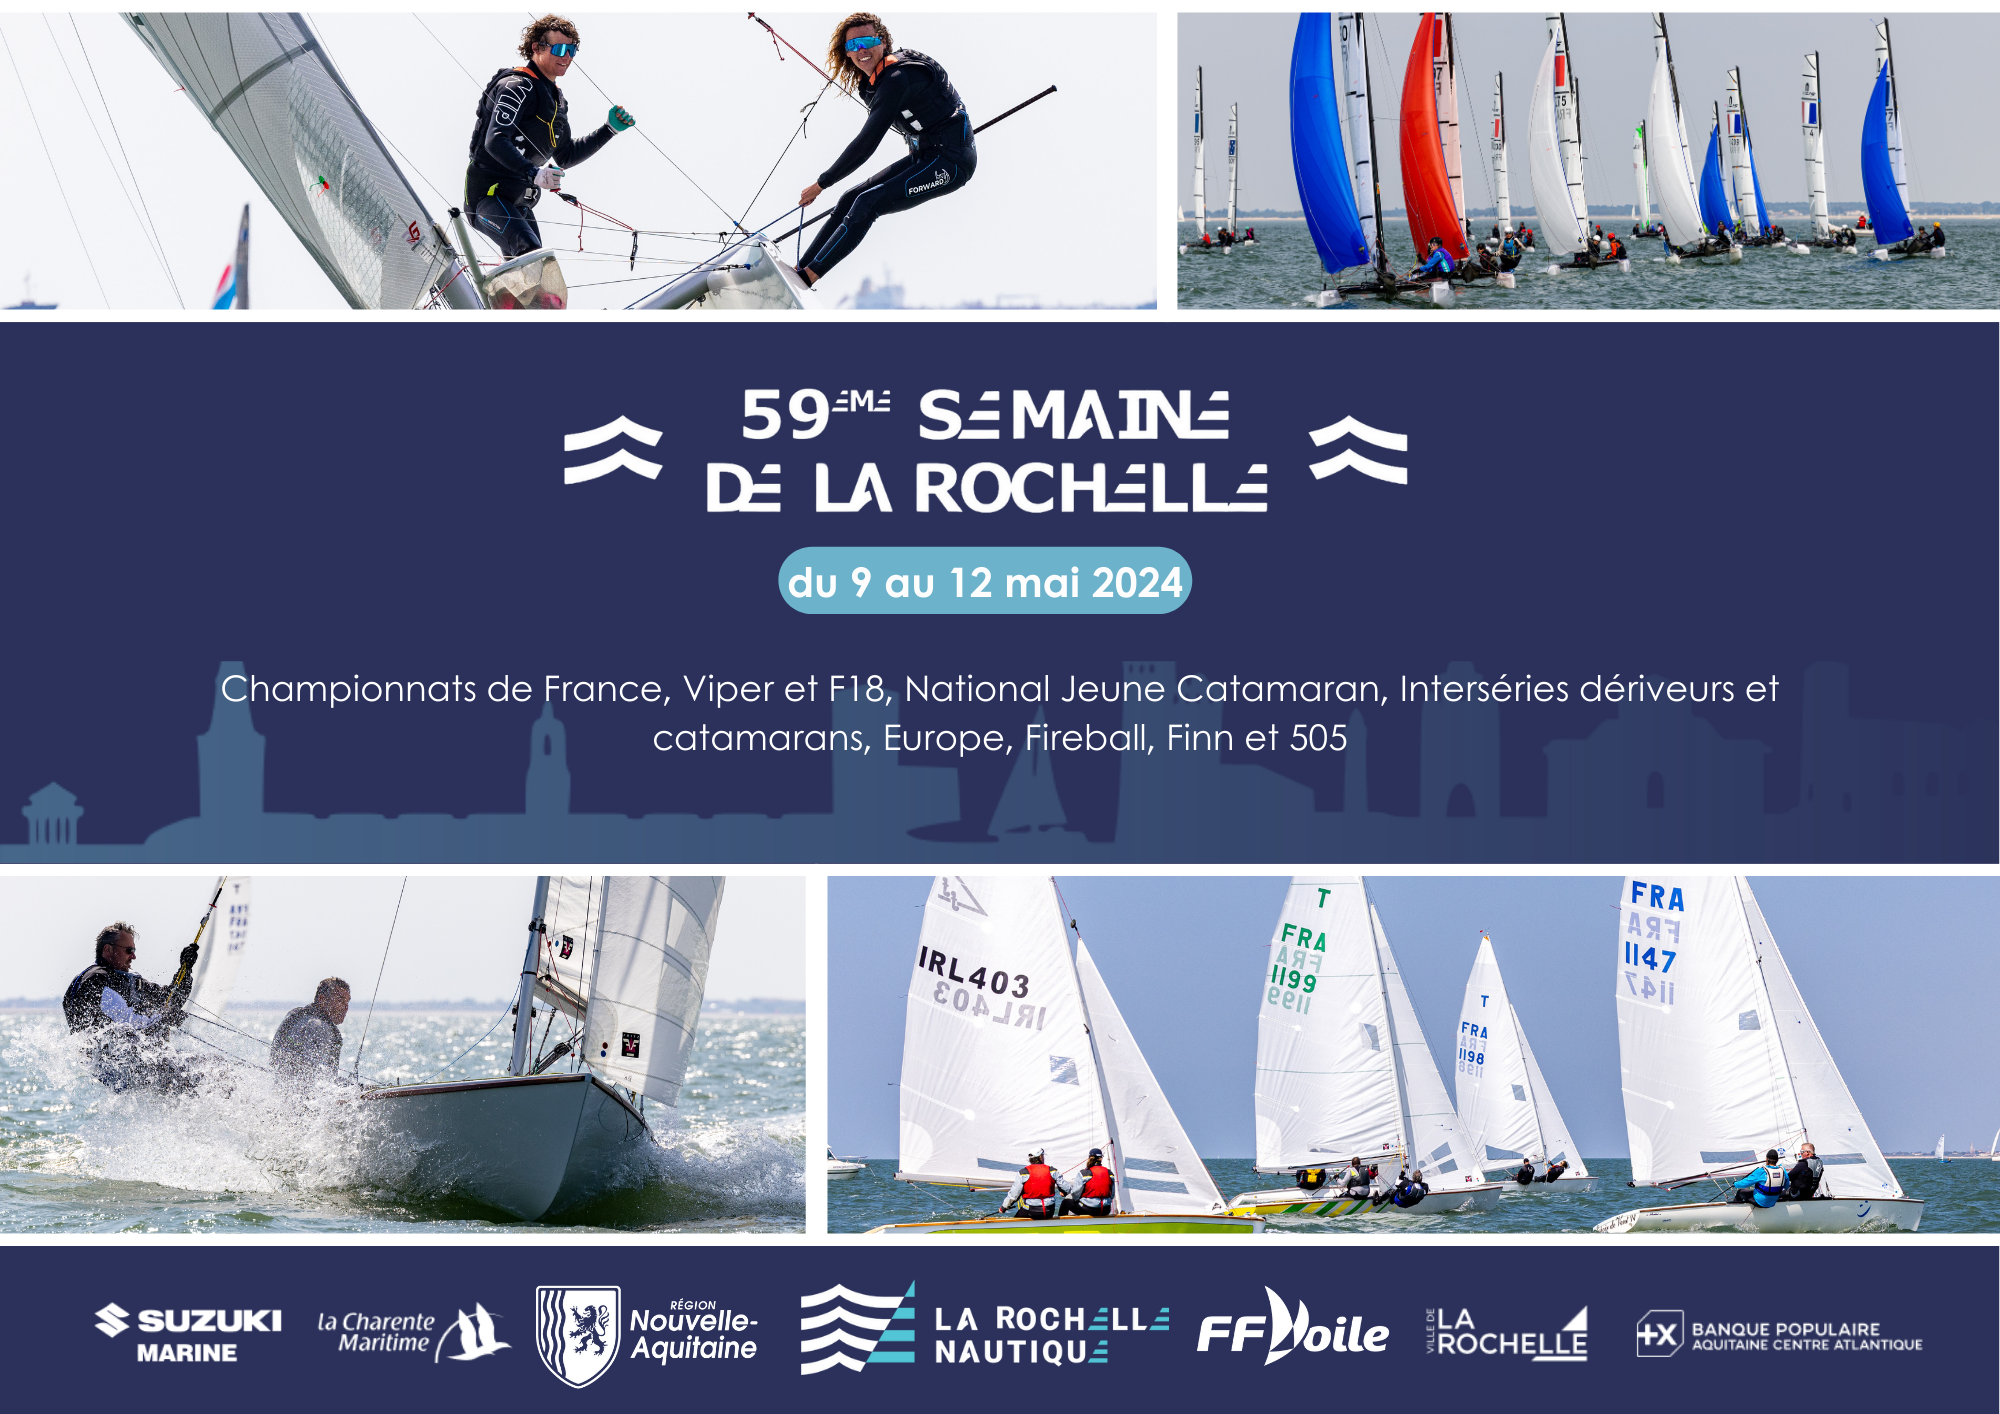 Lire la suite à propos de l’article Semaine de La Rochelle 2024, du 9 au 12 mai